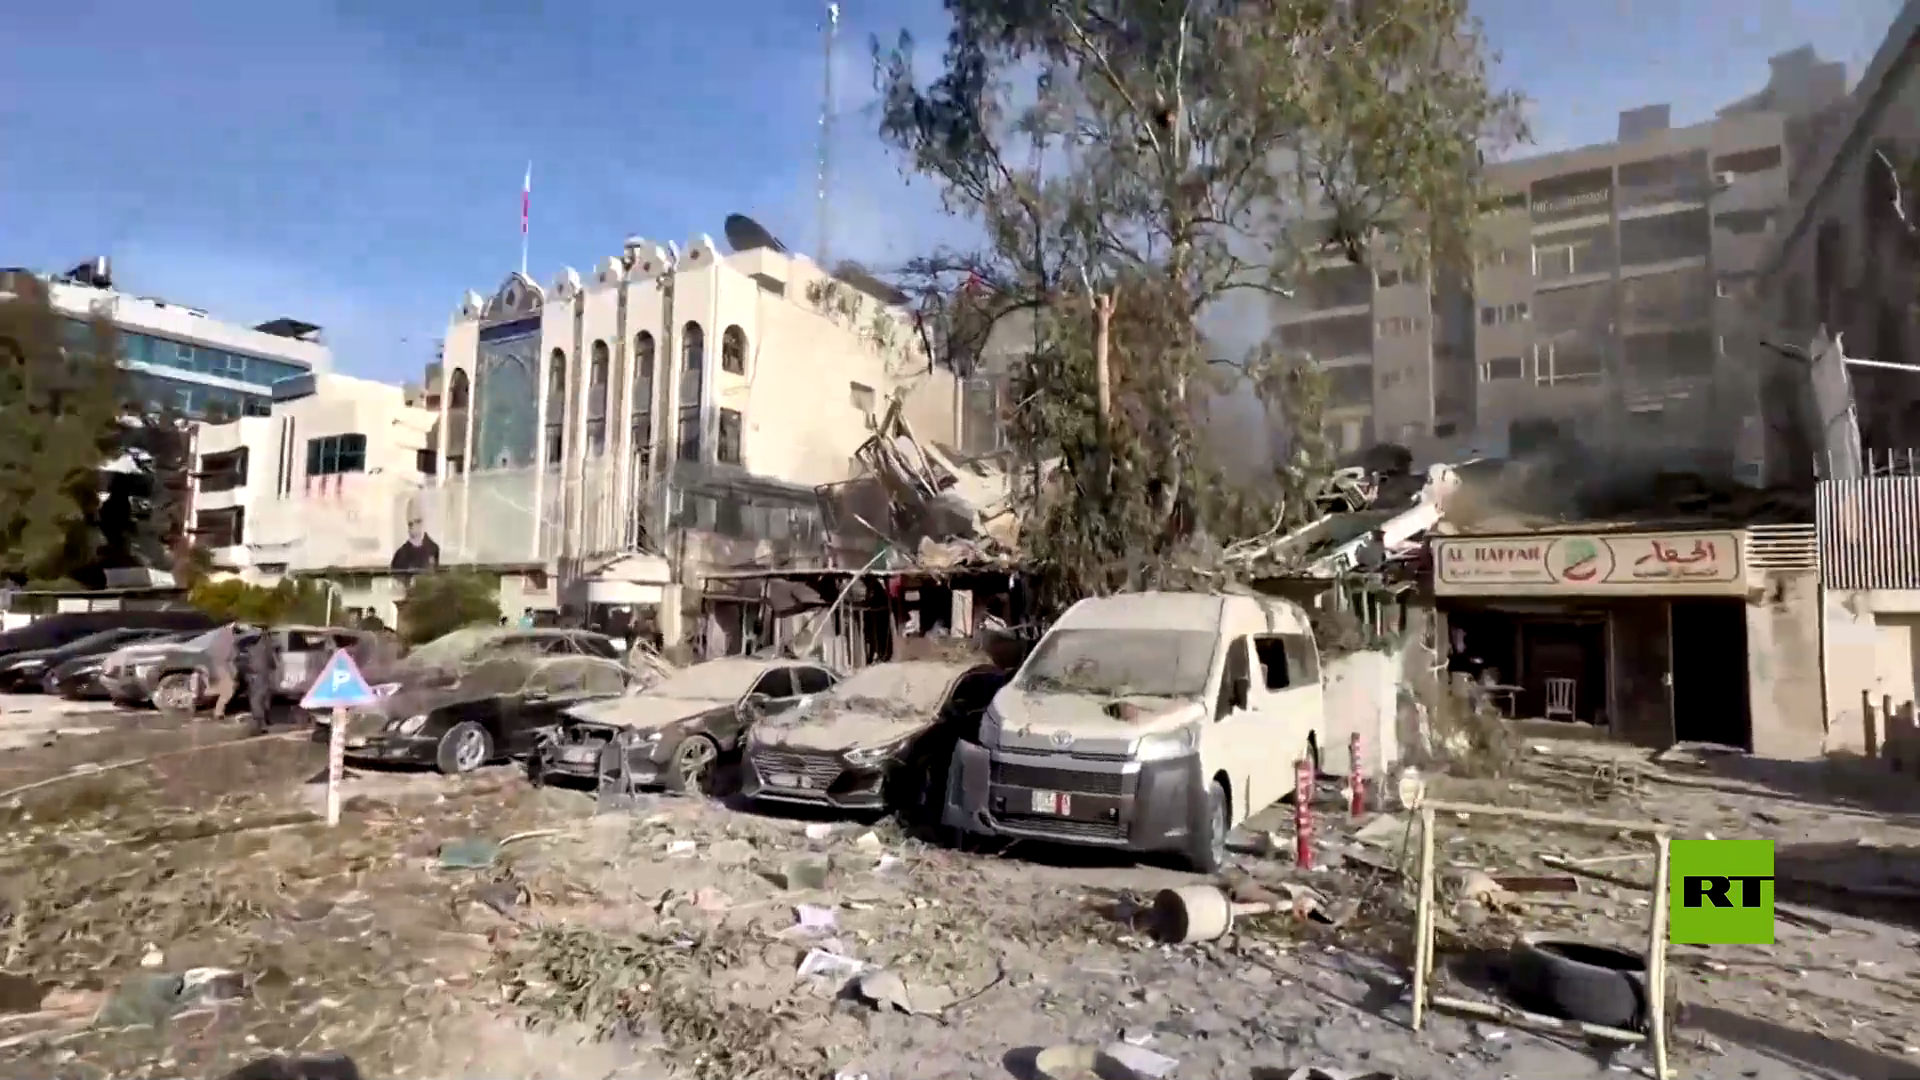 سوريا.. فيديوهات وصور تظهر حجم الدمار جراء استهداف مبنى ملاصق للسفارة الإيرانية لدى دمشق